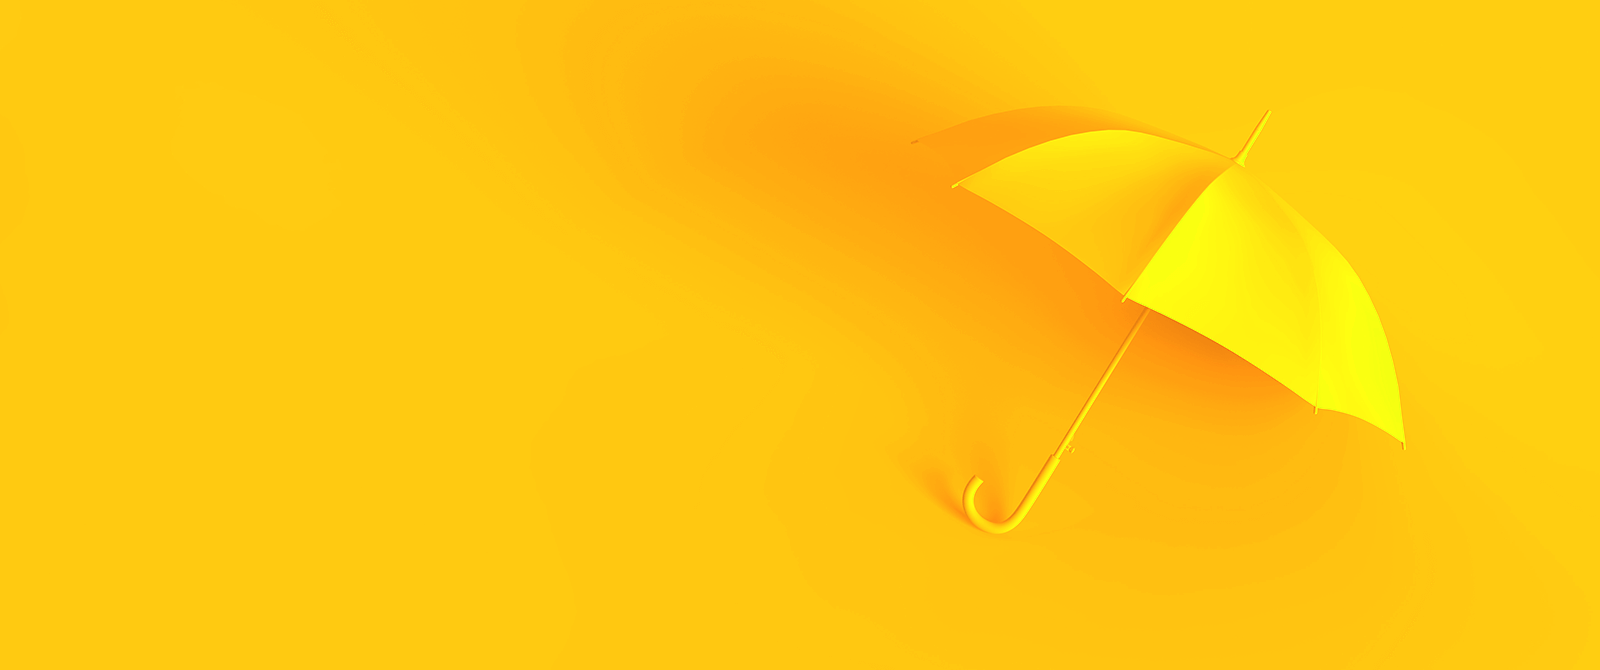 An open yellow umbrella.